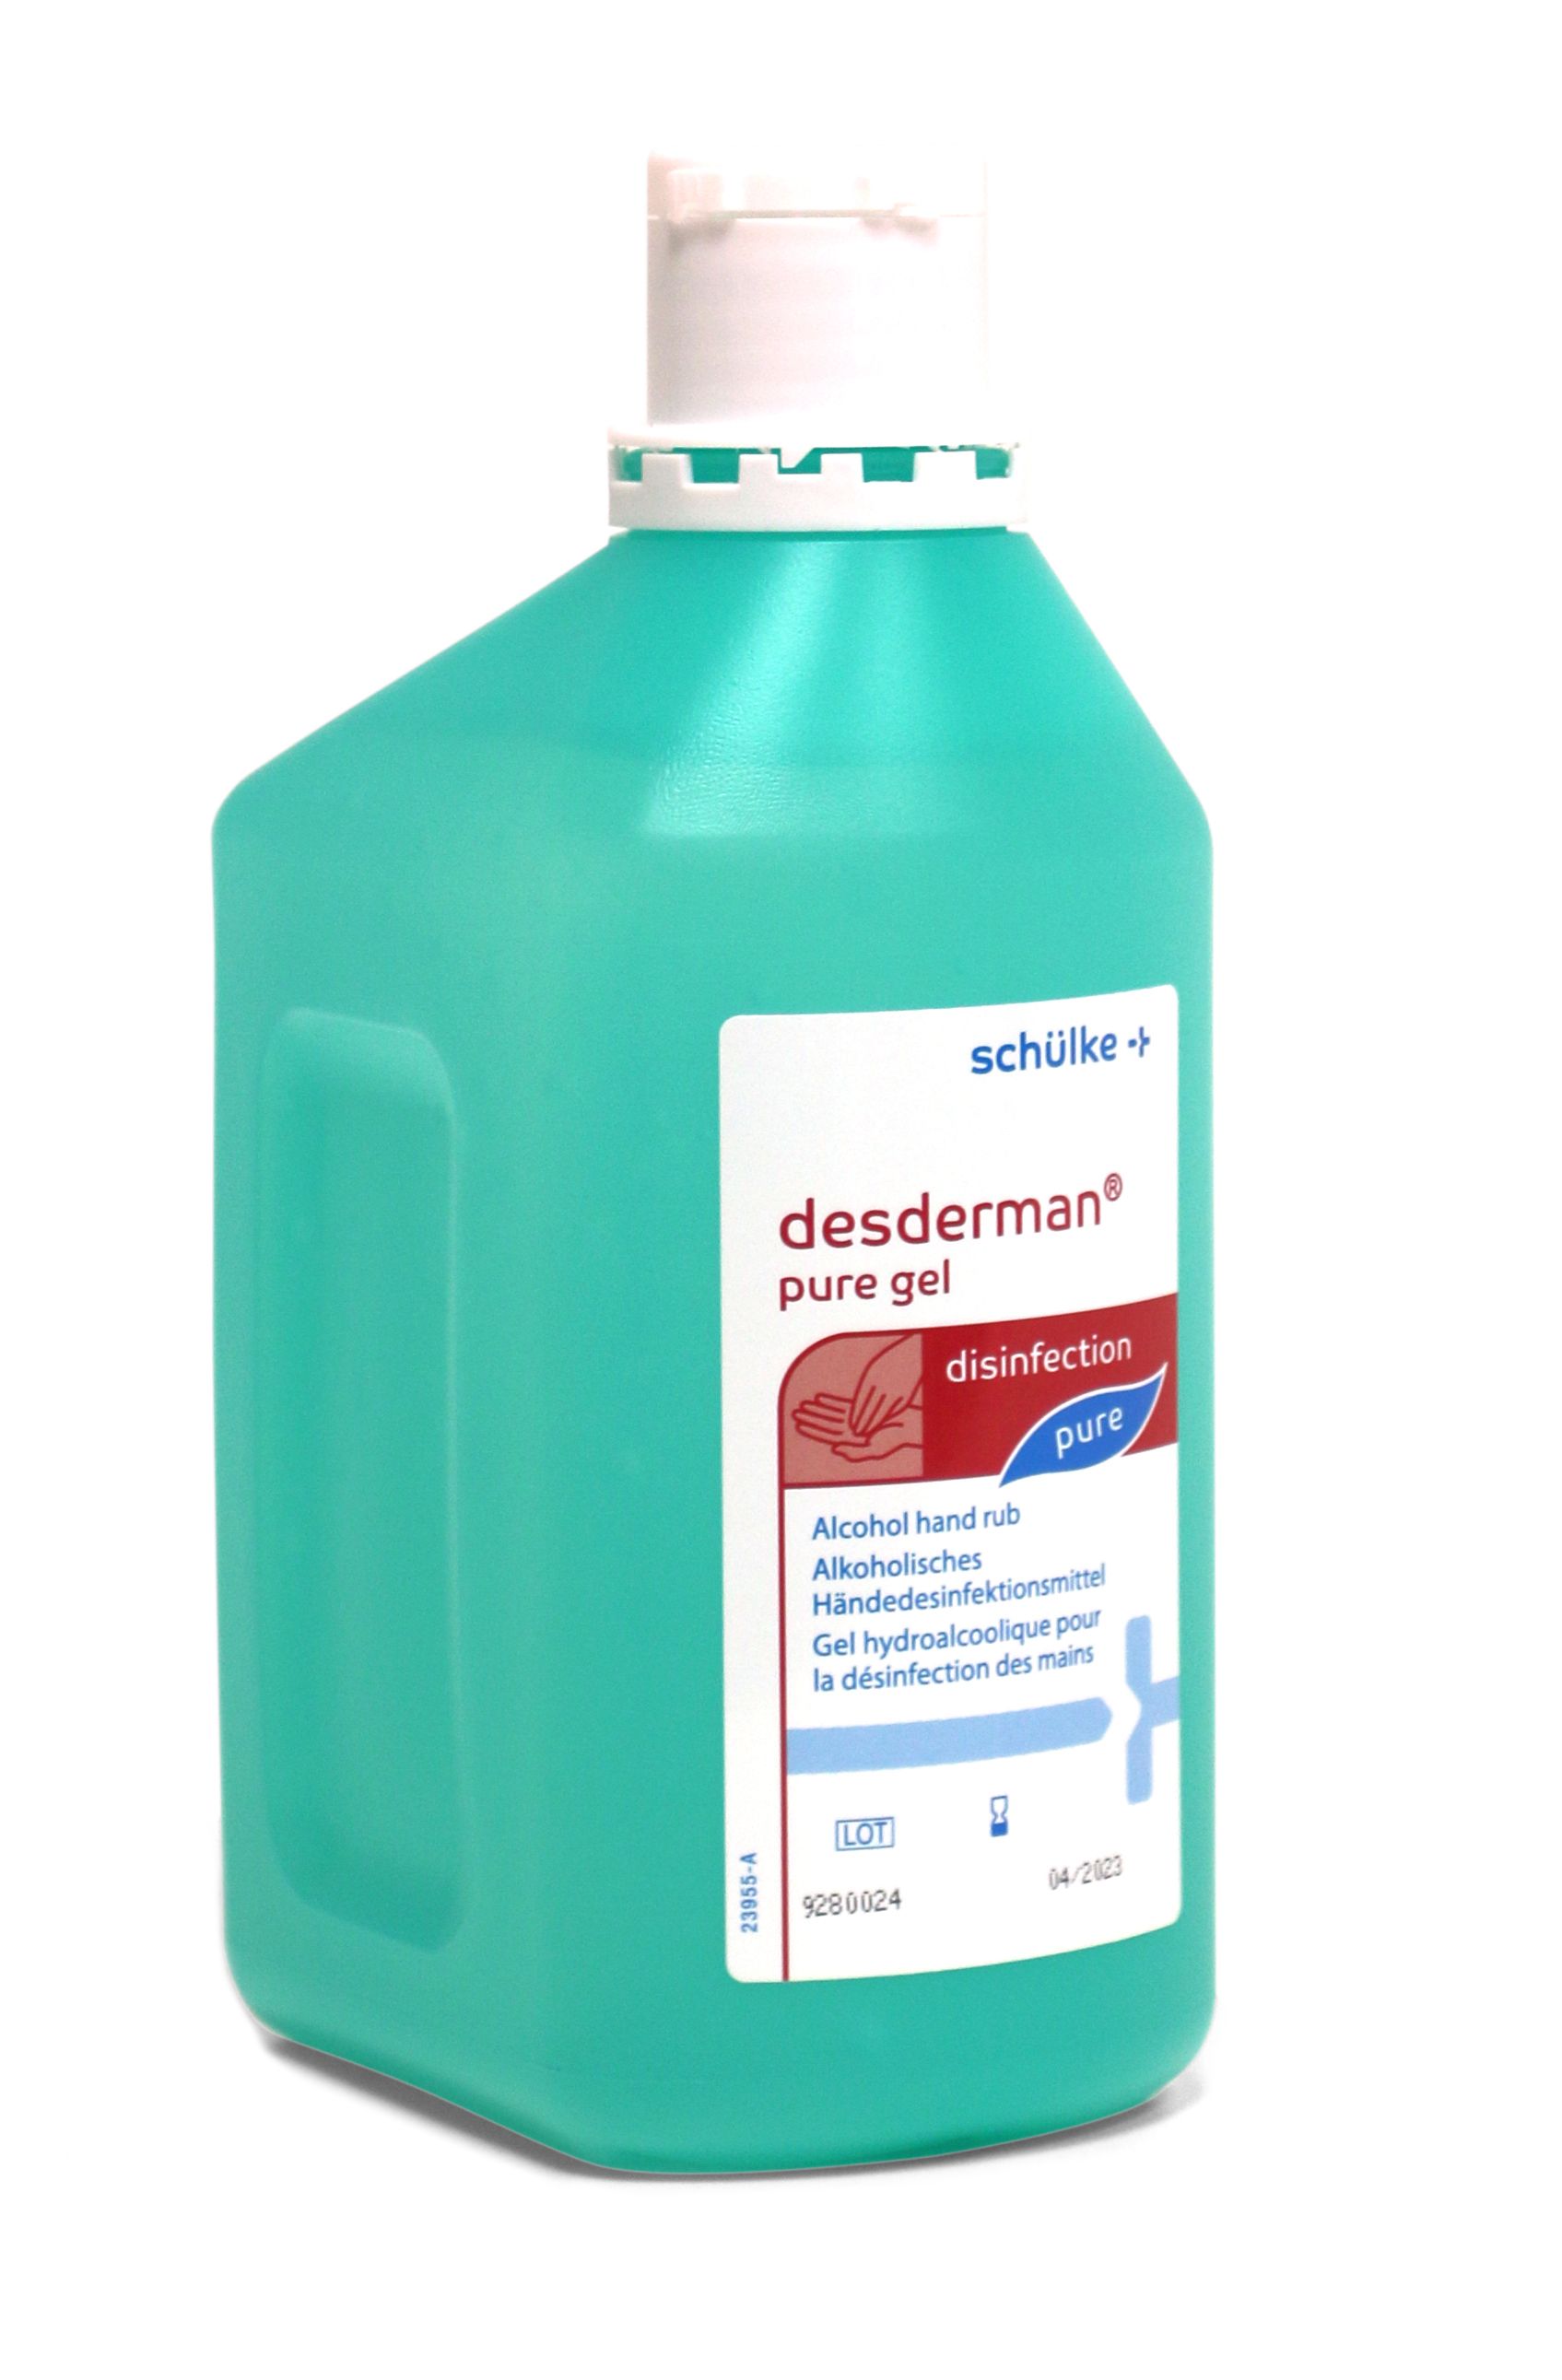 Désinfectant pour les mains Schülke Desderman 10 x 1000 ml (GEL)